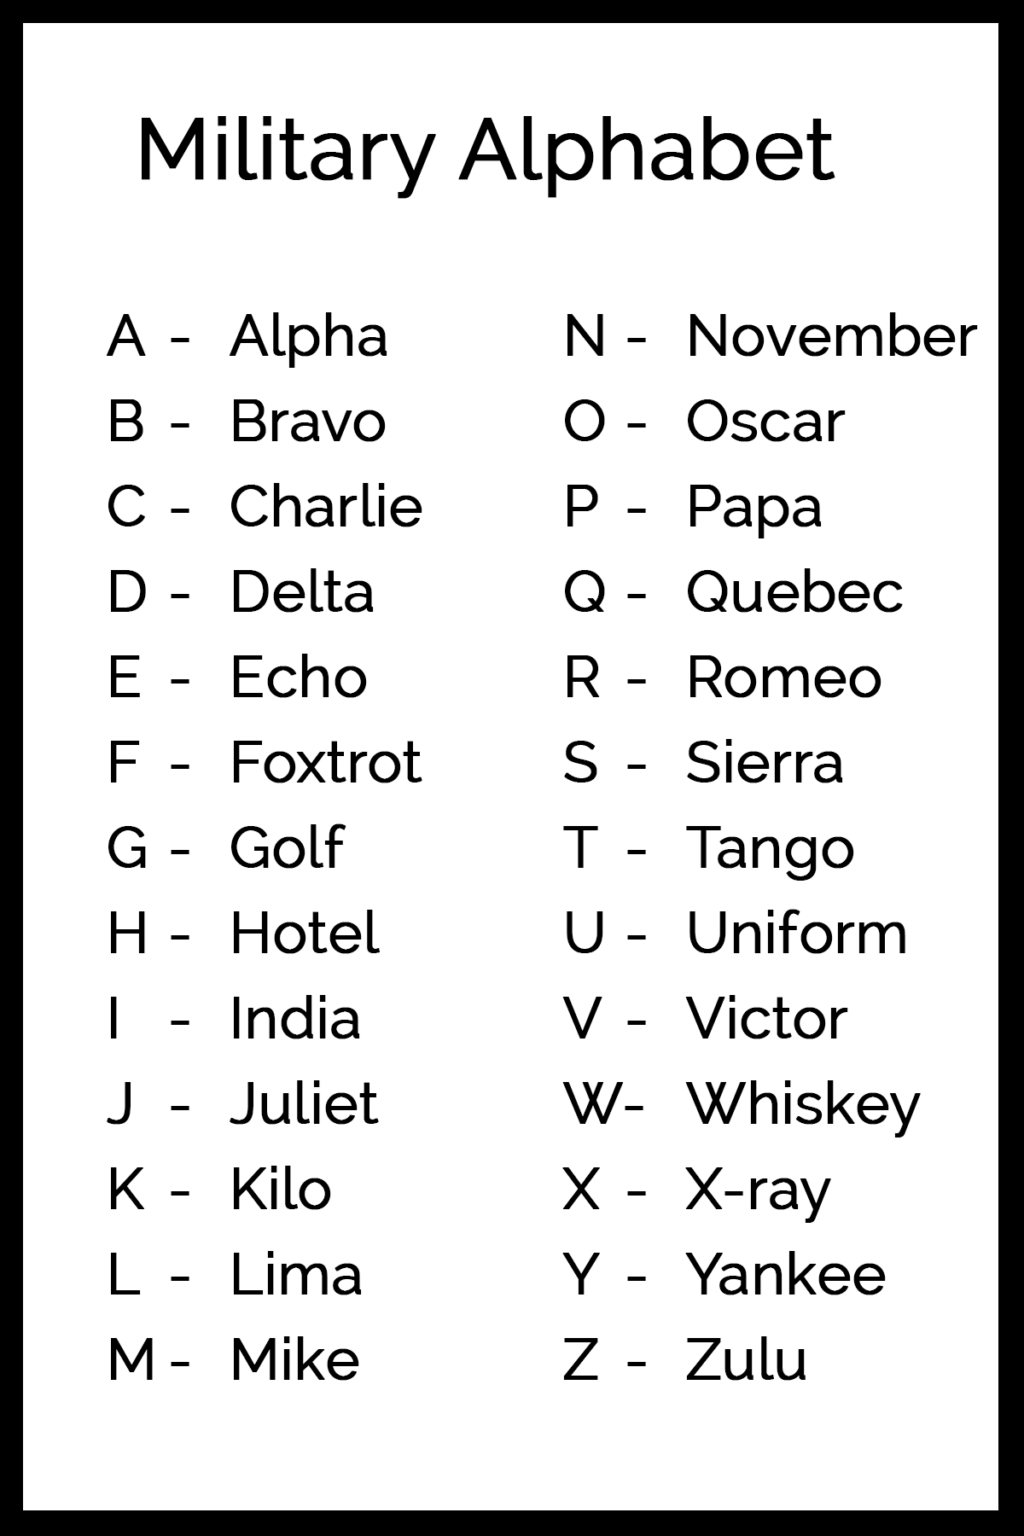 army-alphabet-code-pdf-military-alphabet